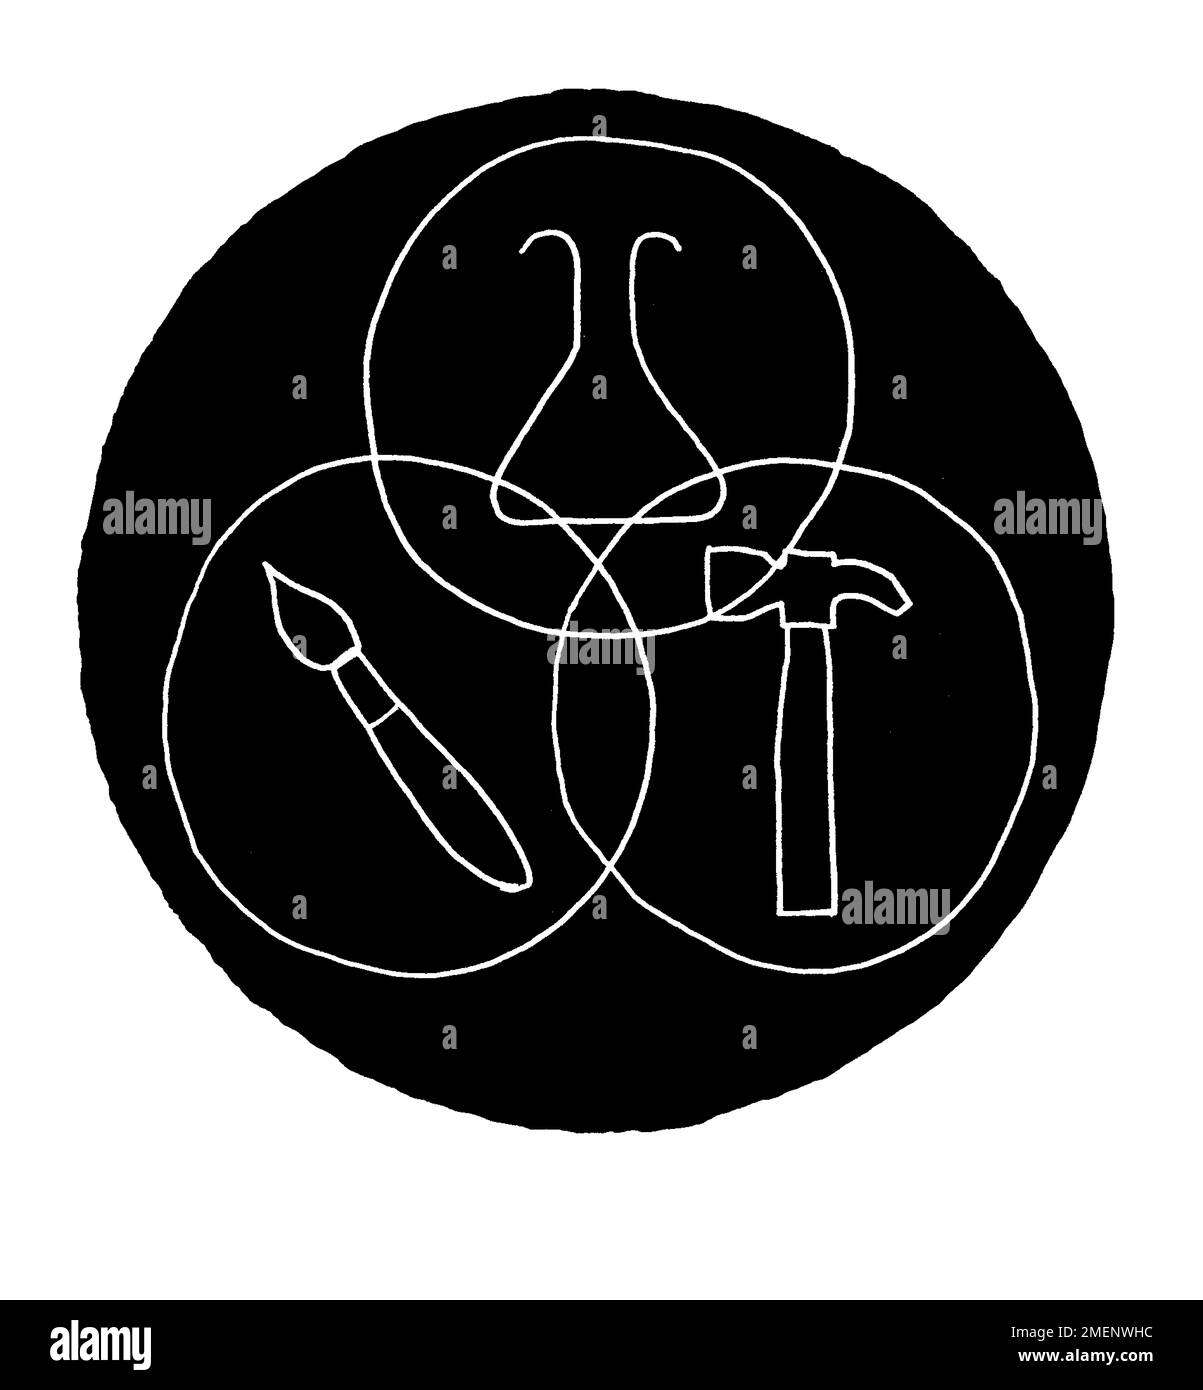 Ilustración en blanco y negro de círculo que contiene contornos de un pincel, vaso de ciencia y un martillo, que representa el arte, la ciencia y la artesanía Foto de stock